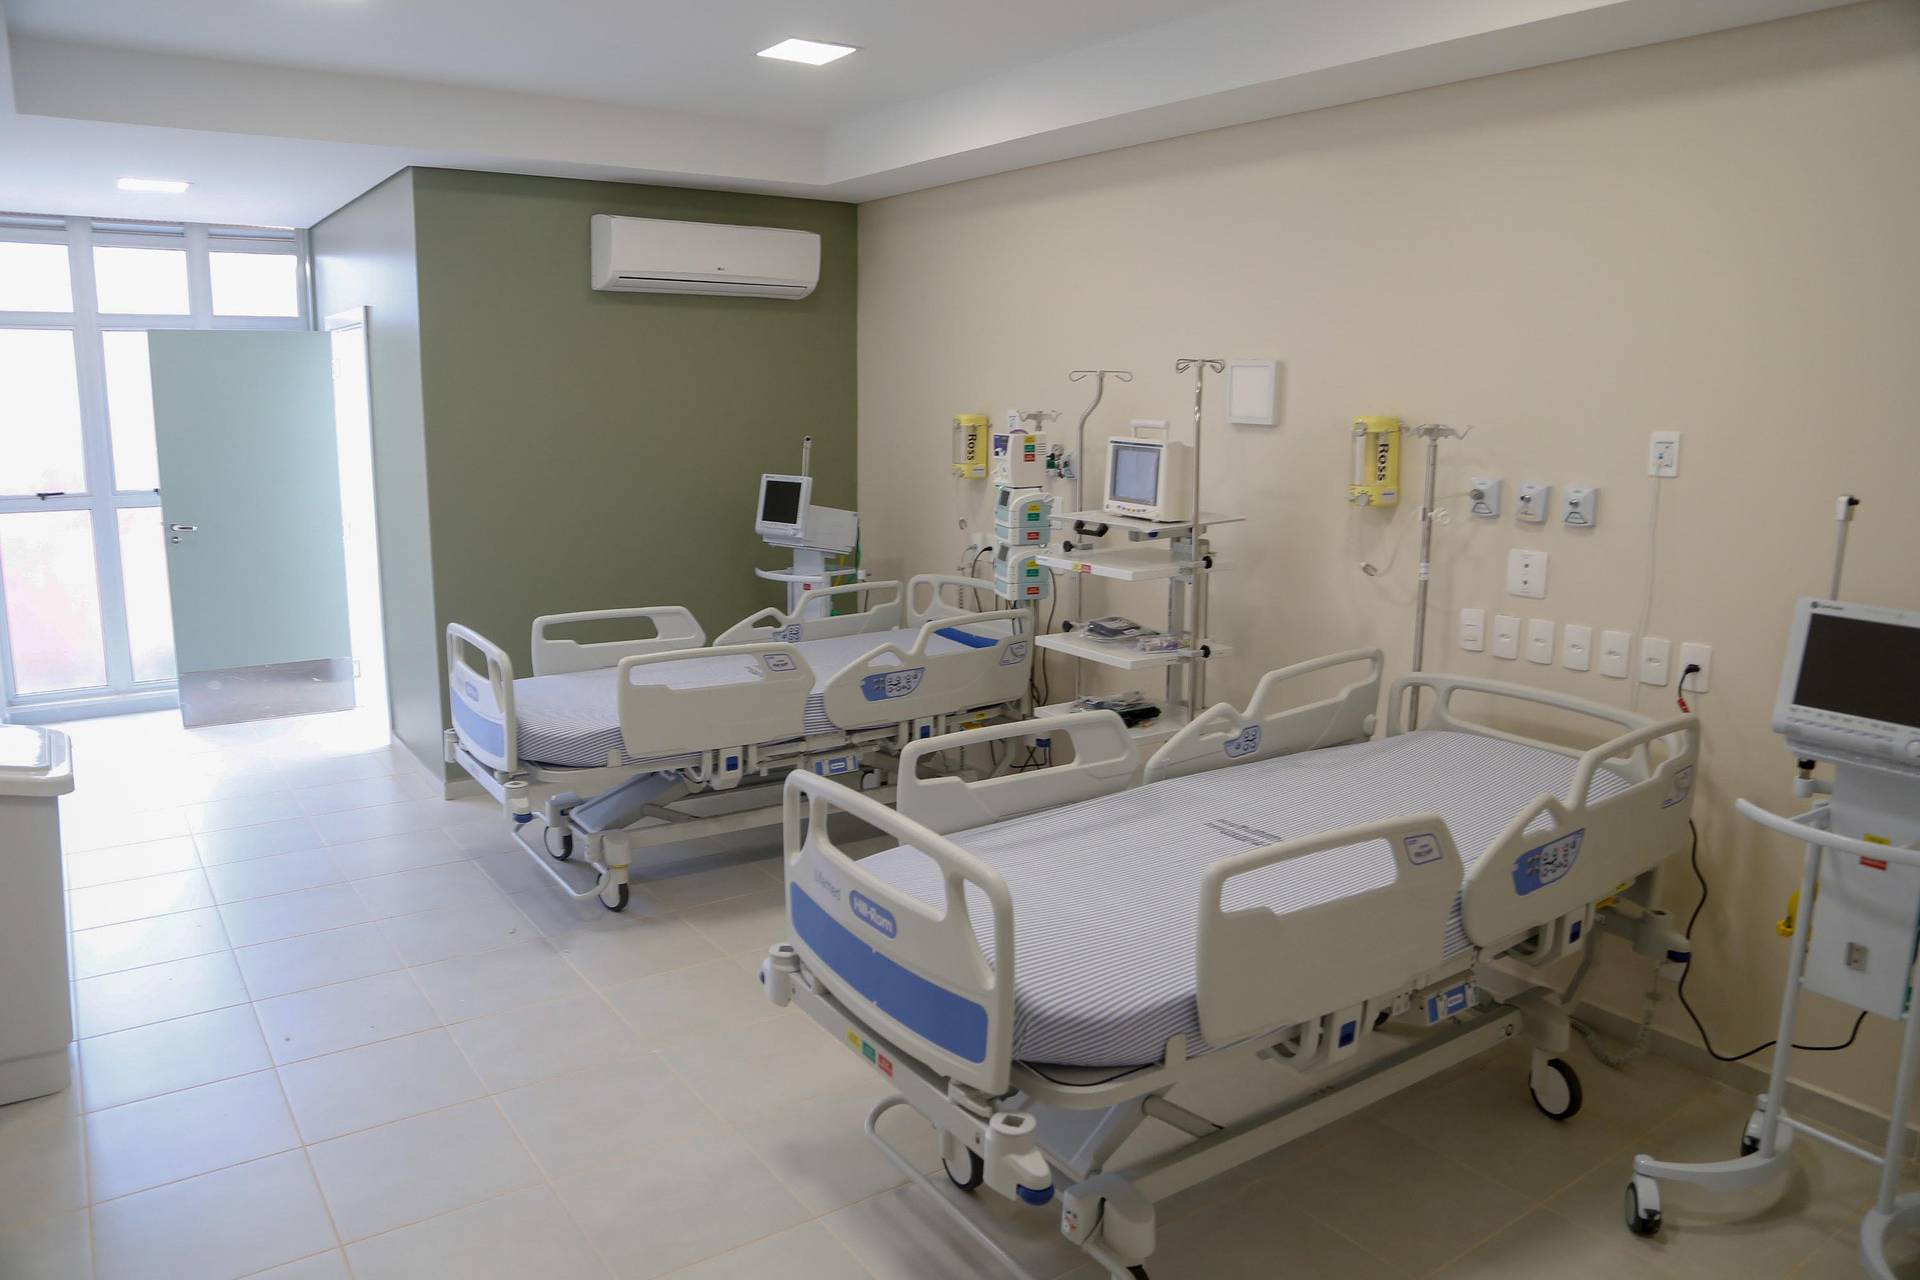 Hospitais privados devem registrar leitos disponíveis para Covid-19 em sistema estadual